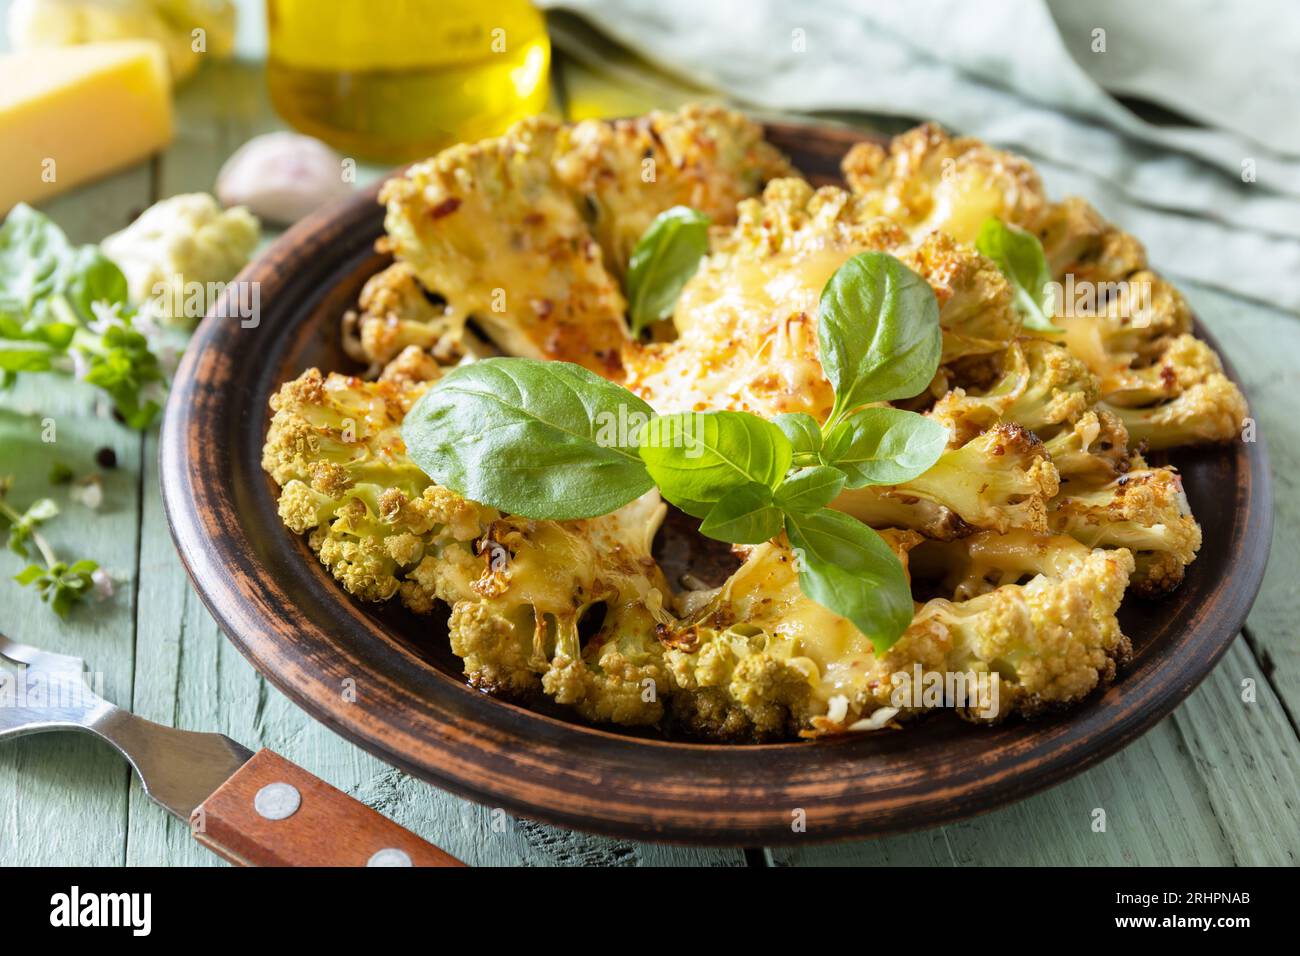 Vegetarische Bio-Gerichte. Gebackene Blumenkohlsteaks mit Kräutern und Gewürzen auf einem Holztisch. Gesunde Ernährung, pflanzliches Fleischersatzkonzept. Stockfoto